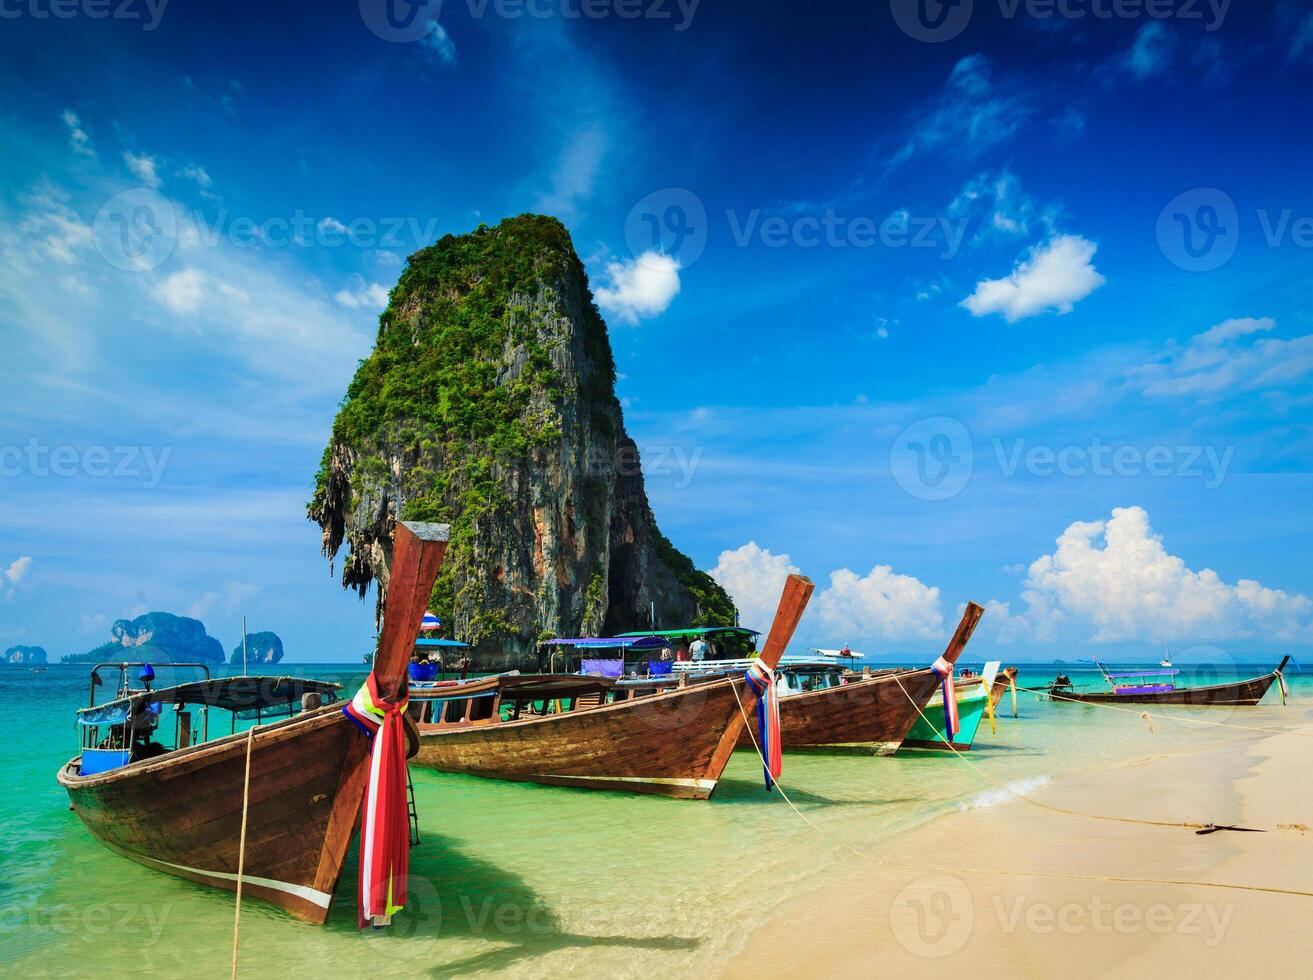 lång svansbåt på stranden, Thailand foto